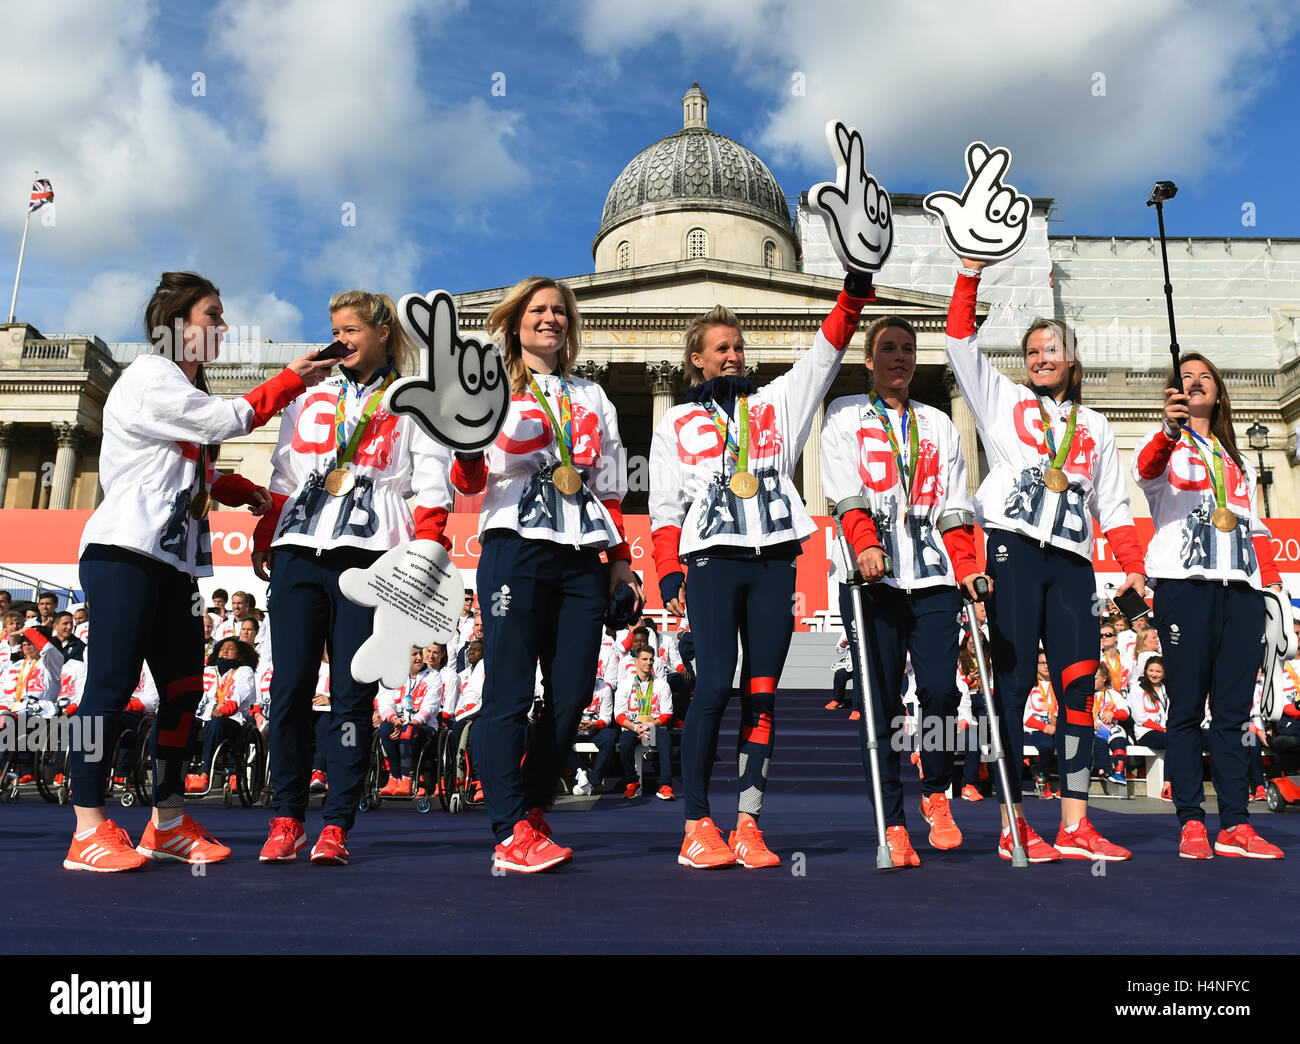 Mitglieder des Team GB Olympischen Eishockey-Teams auf der Bühne am Trafalgar Square während der Olympischen und Paralympischen Athleten Helden zurück in London. Stockfoto